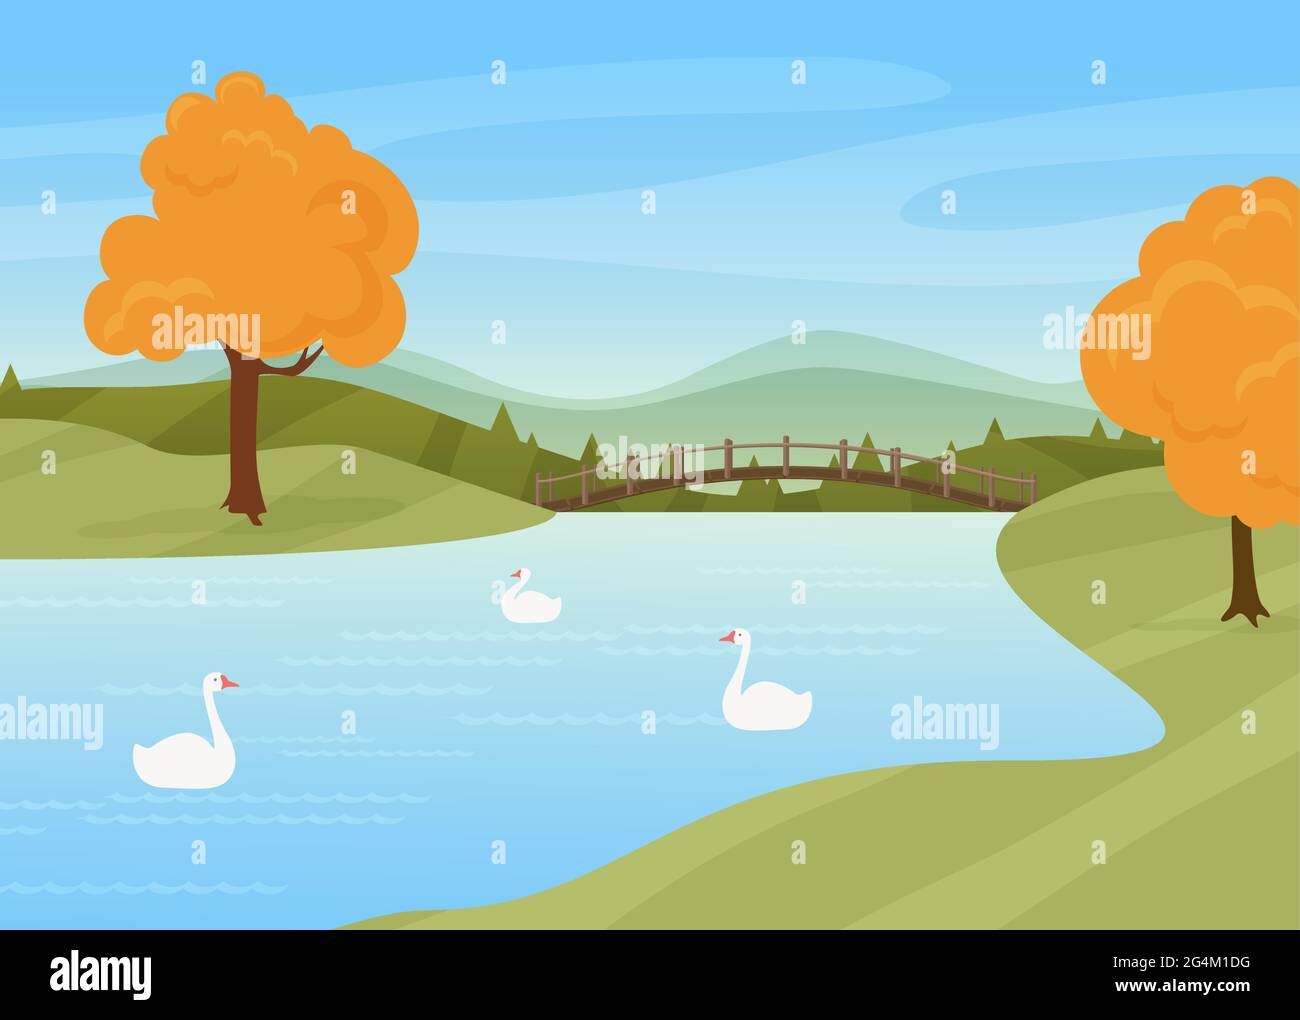 Les cygnes nagent dans la rivière, rural automne nature paysage illustration vectorielle. Dessins animés d'oiseaux sauvages sur la surface de l'eau, pont au-dessus de la rivière ou du lac, arbres avec feuilles automnales jaunes se tiennent à côté du fond de la rivière Illustration de Vecteur